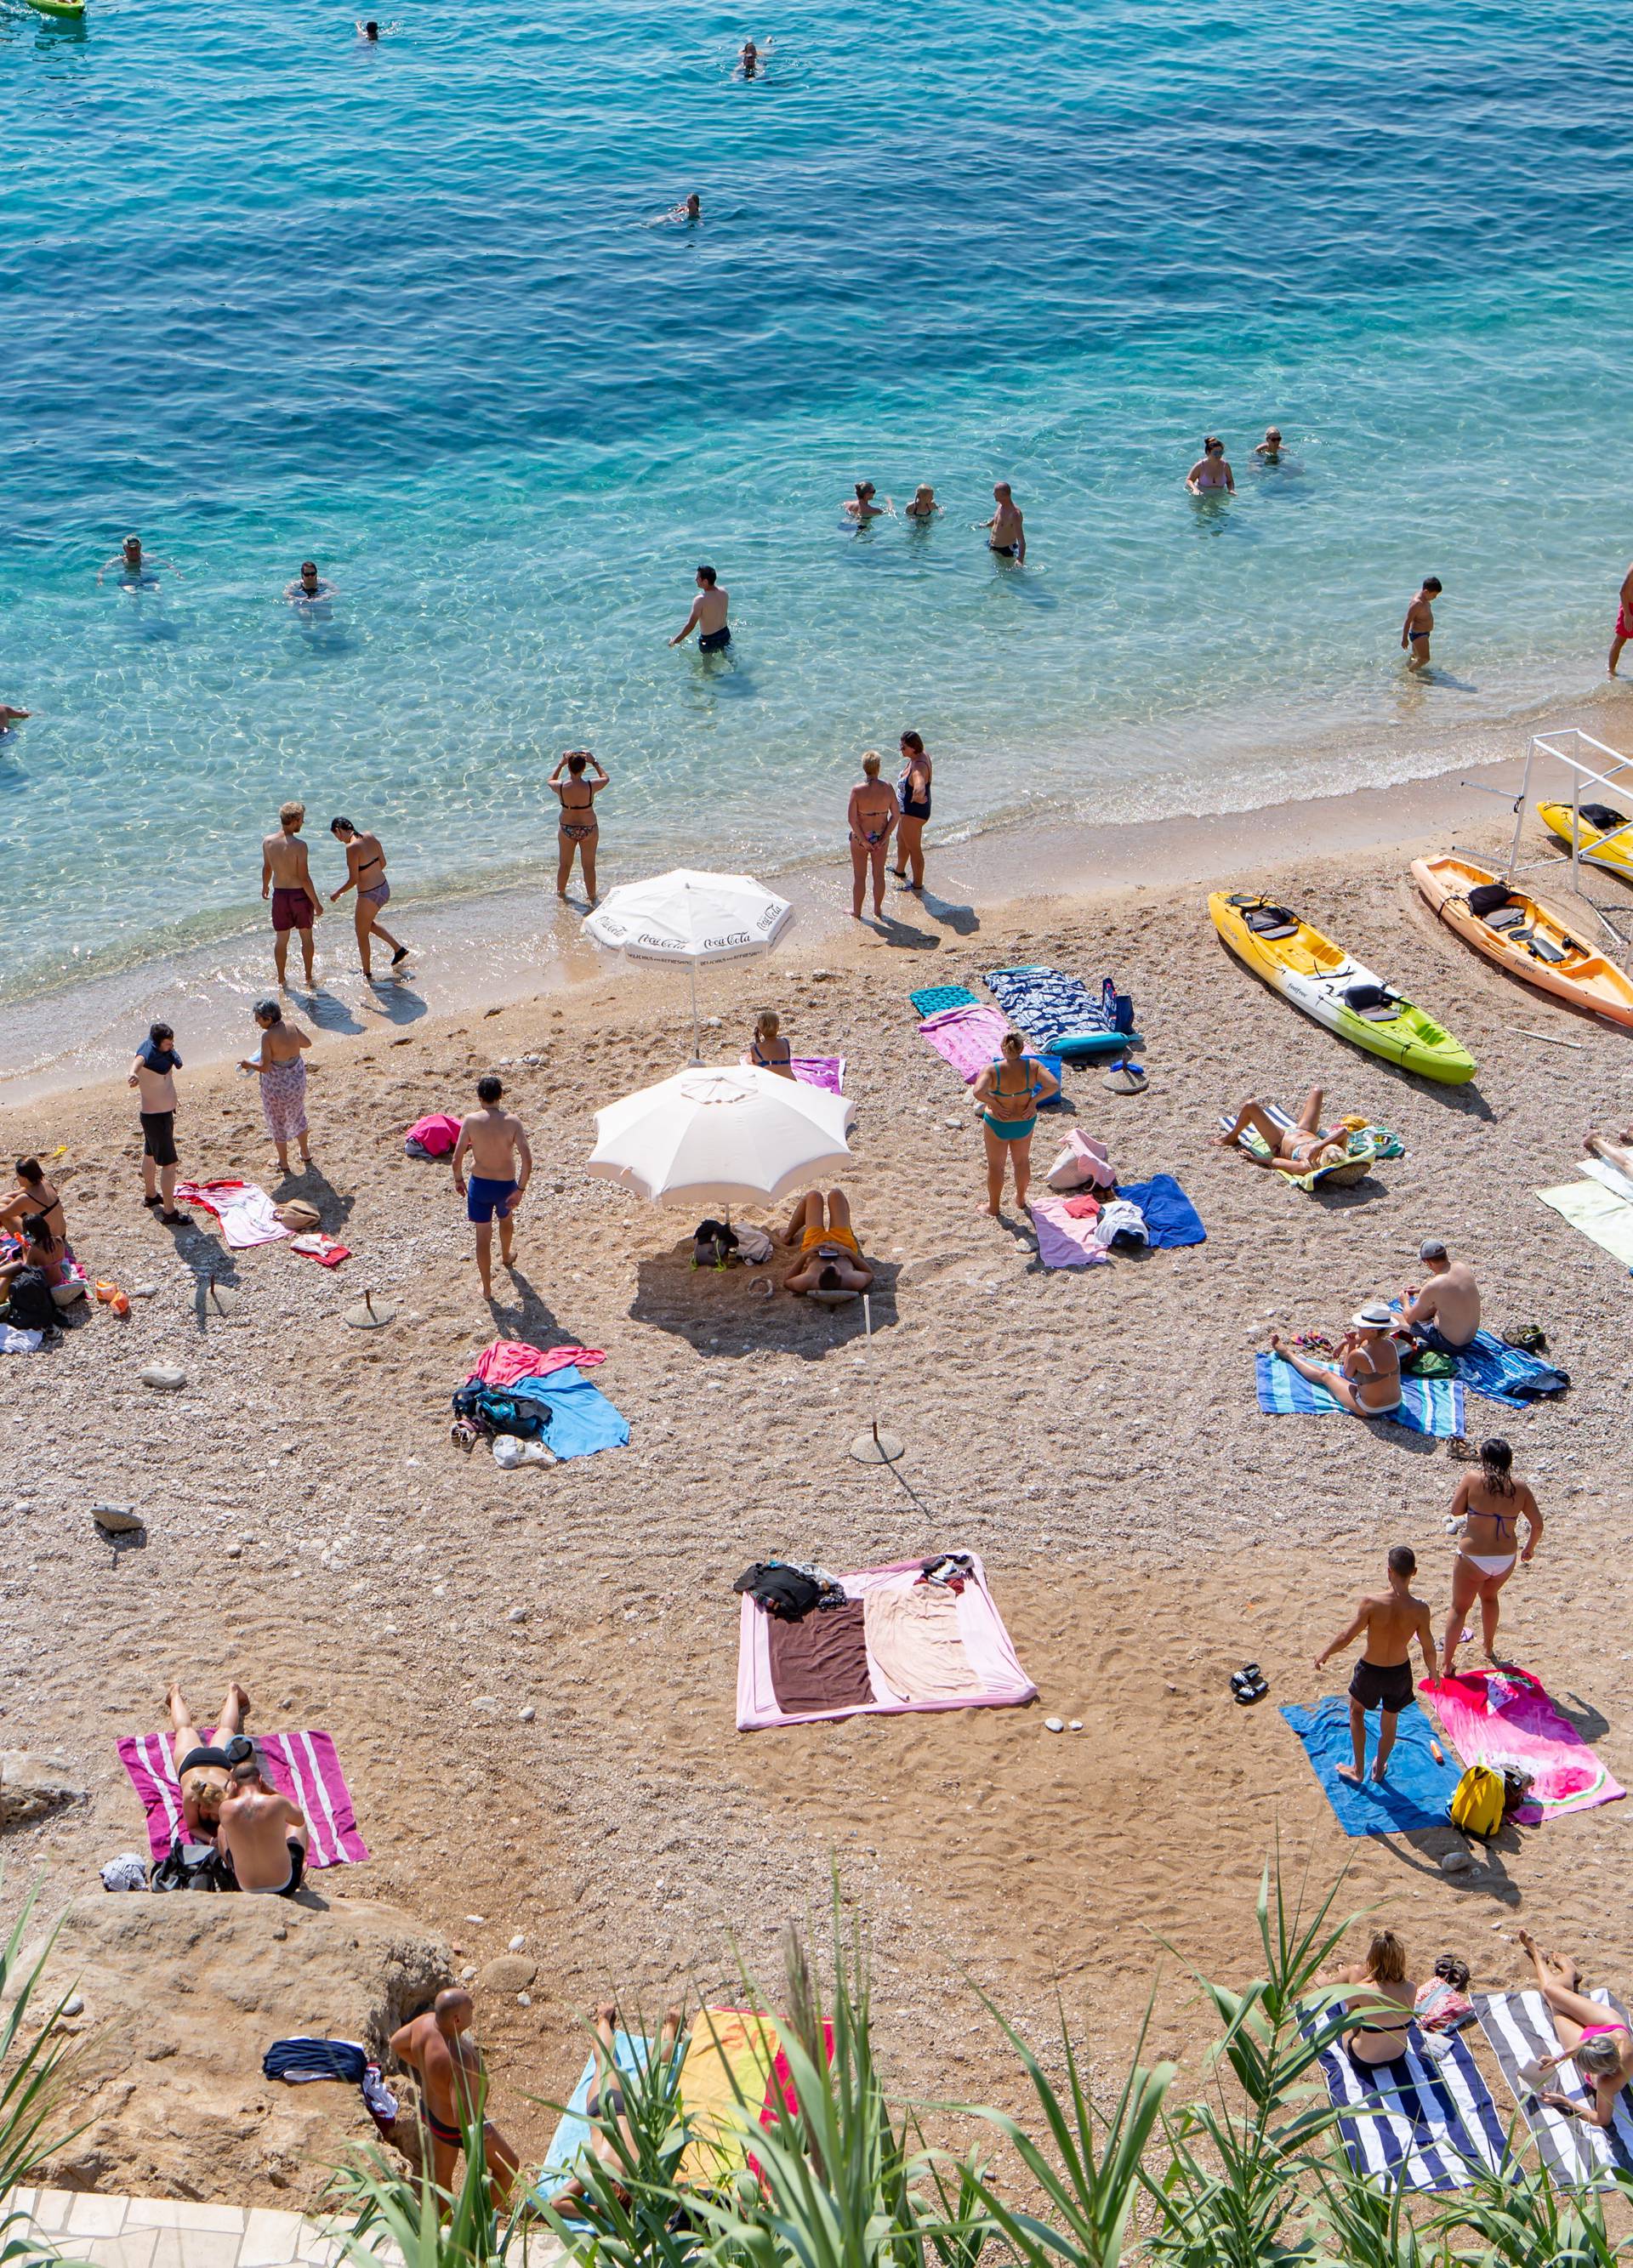 Dubrovnik: Zbog visokih temperatura mora, plaÅ¾e joÅ¡ uvijek pune